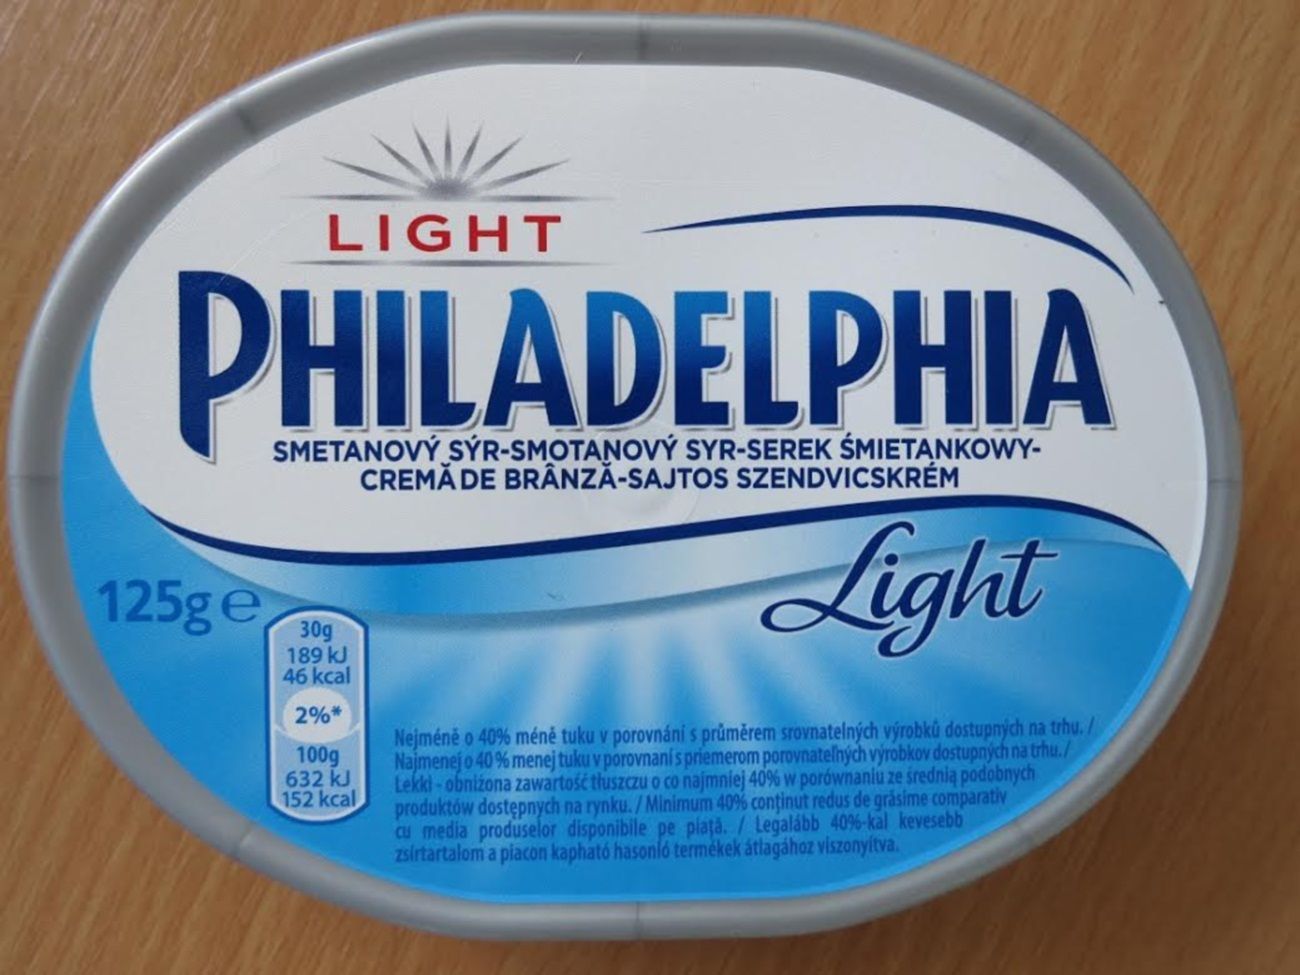 Light Philadelphia smetanový sýr prodávaný v Tesku